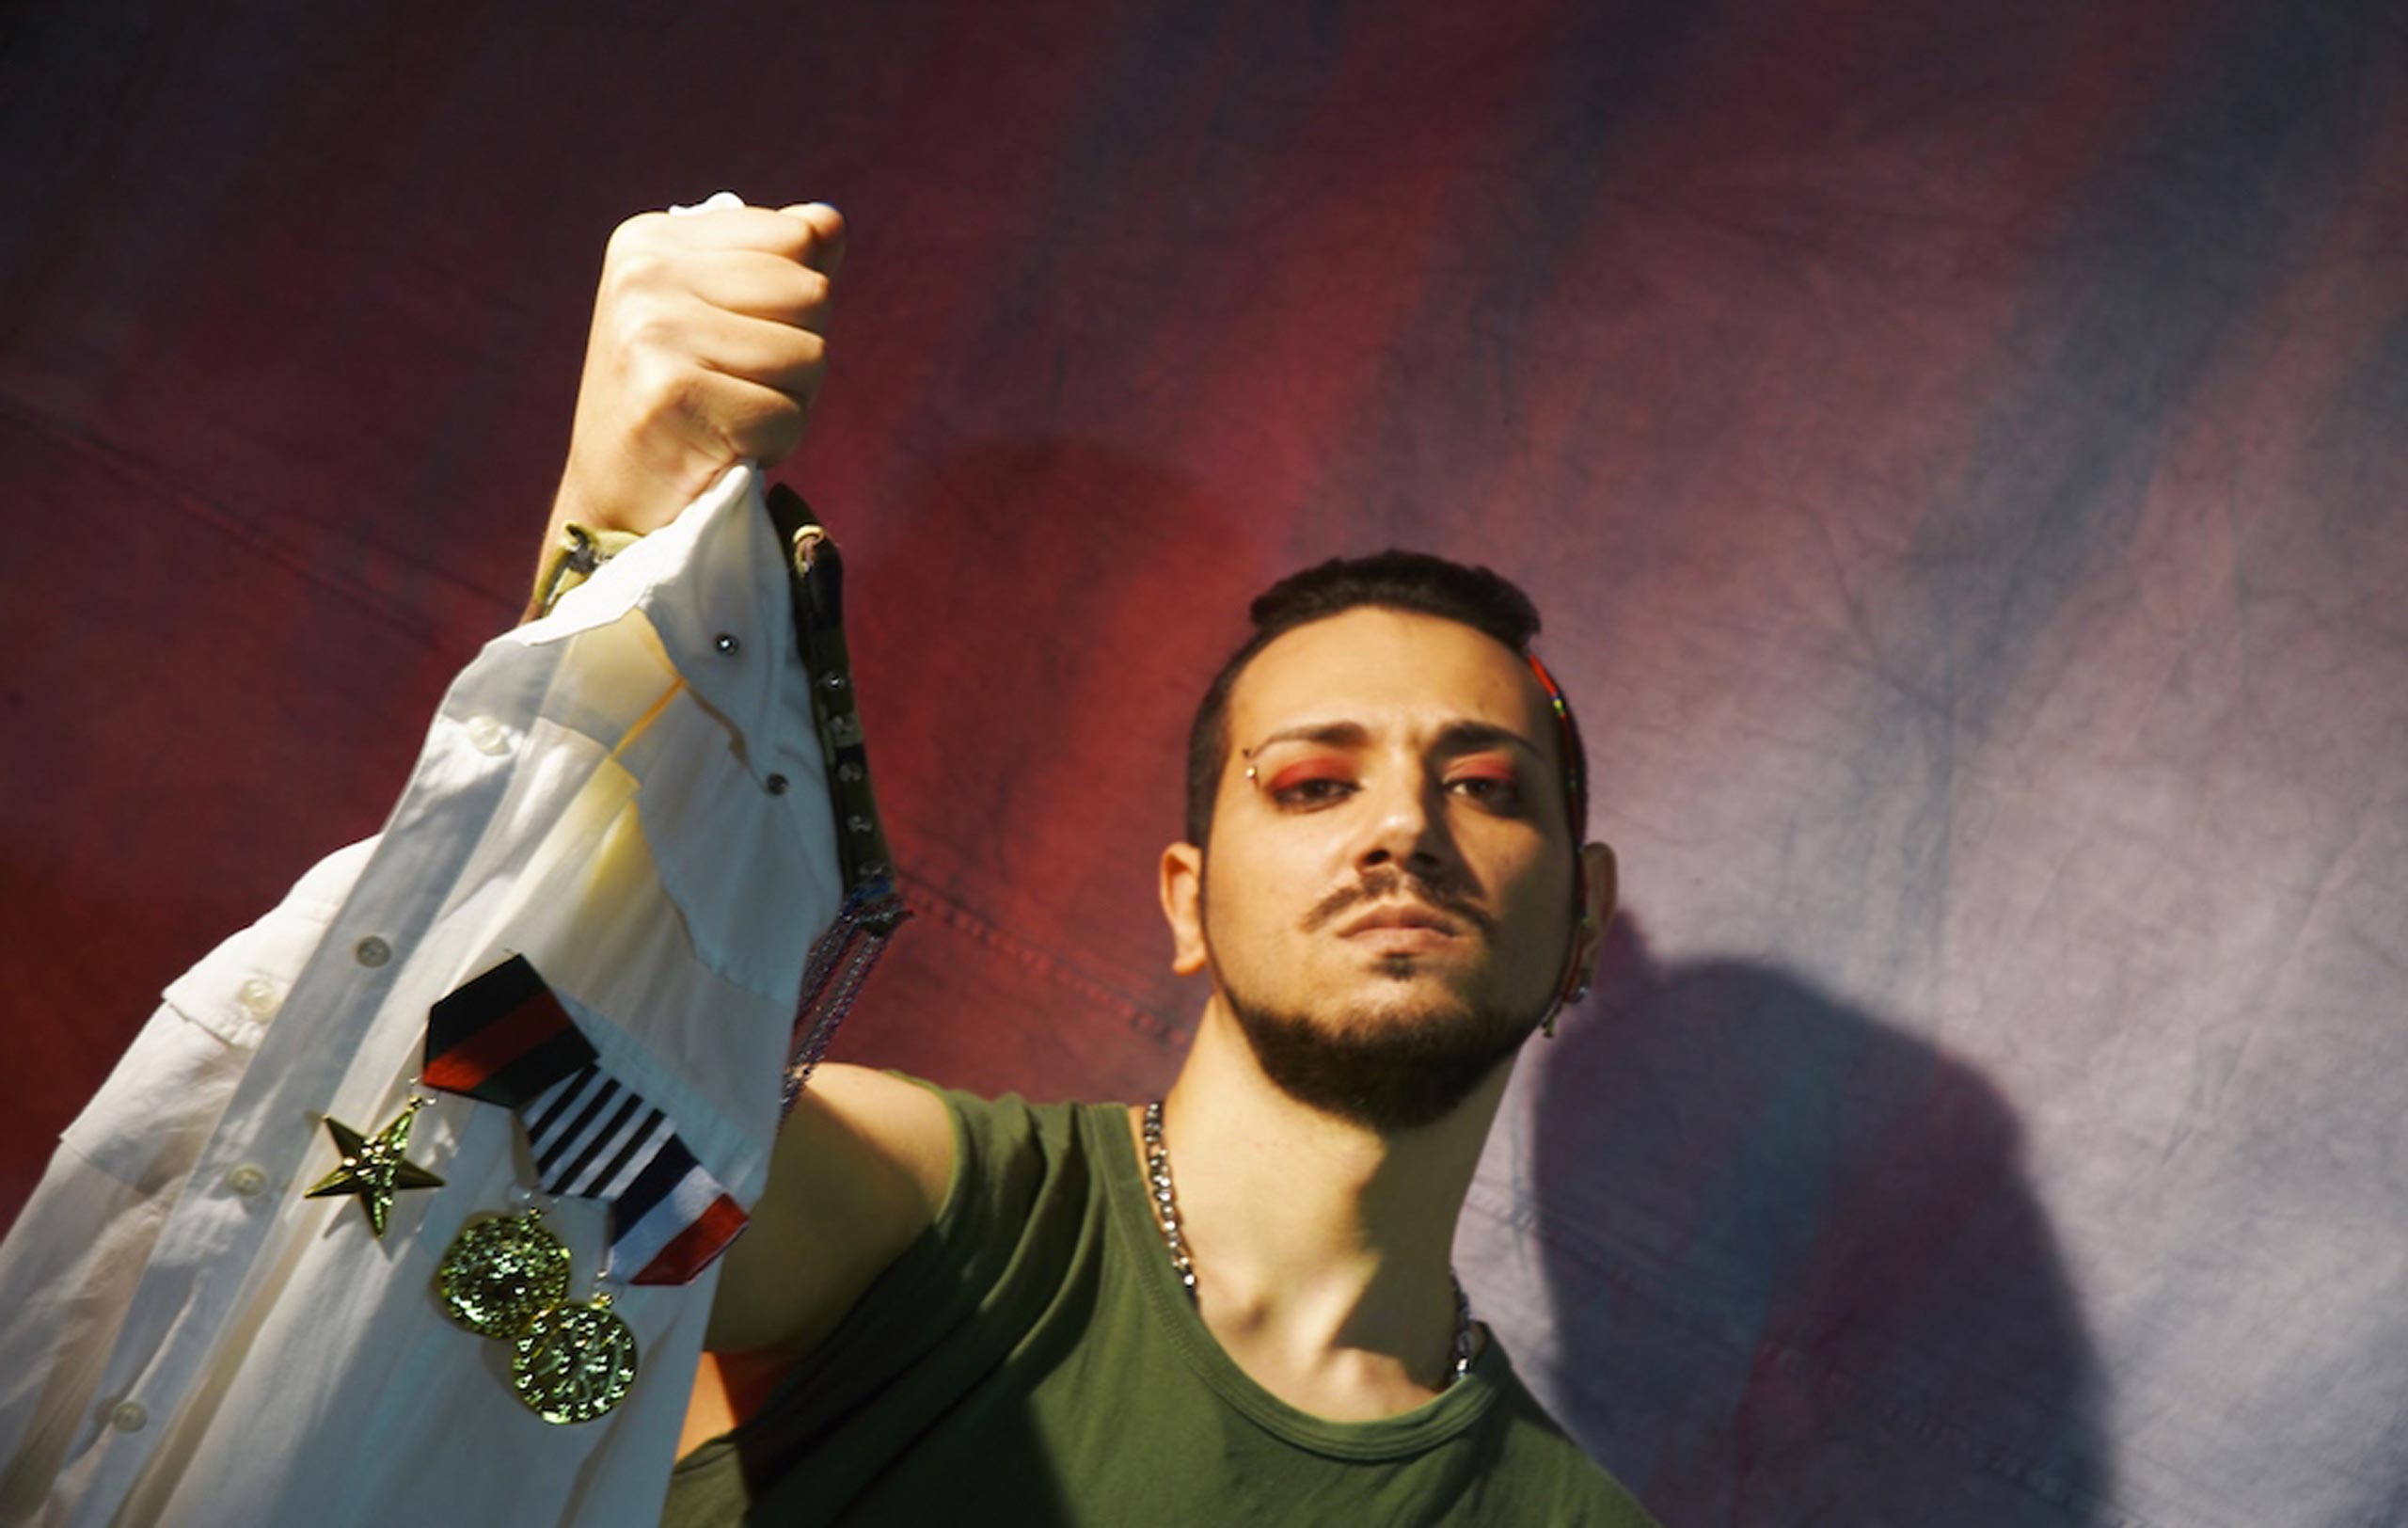 Online Fronte della nuova rivoluzione universale, il nuovo EP del cantautore pop rock anagnino Antòn